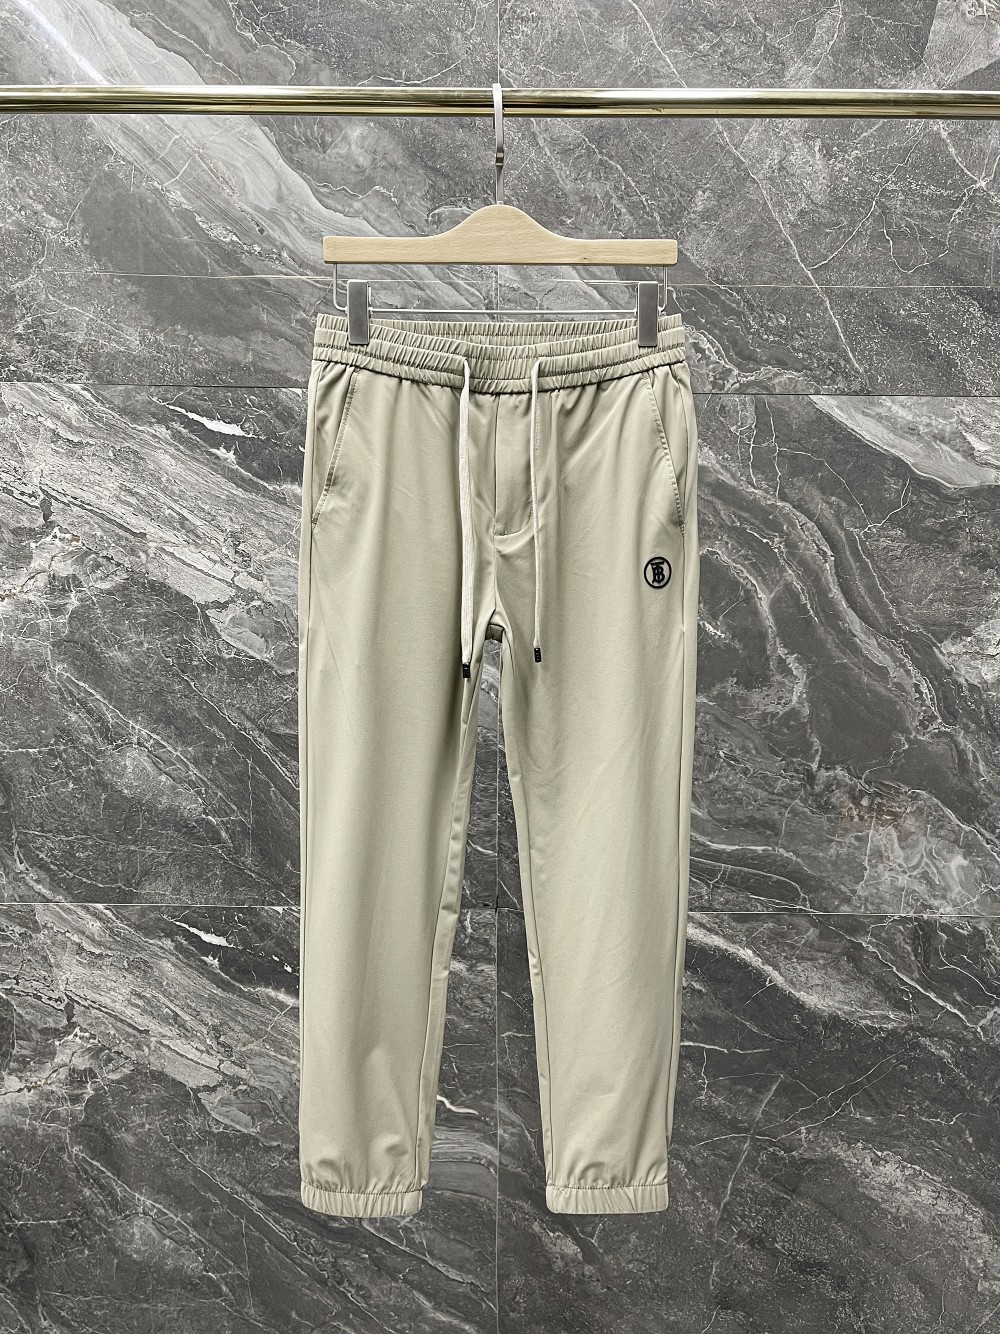 カジュアル 履き心地いい ウエストゴム バーバリー パンツ コピー メンズ かっこいい ズボン ファッション